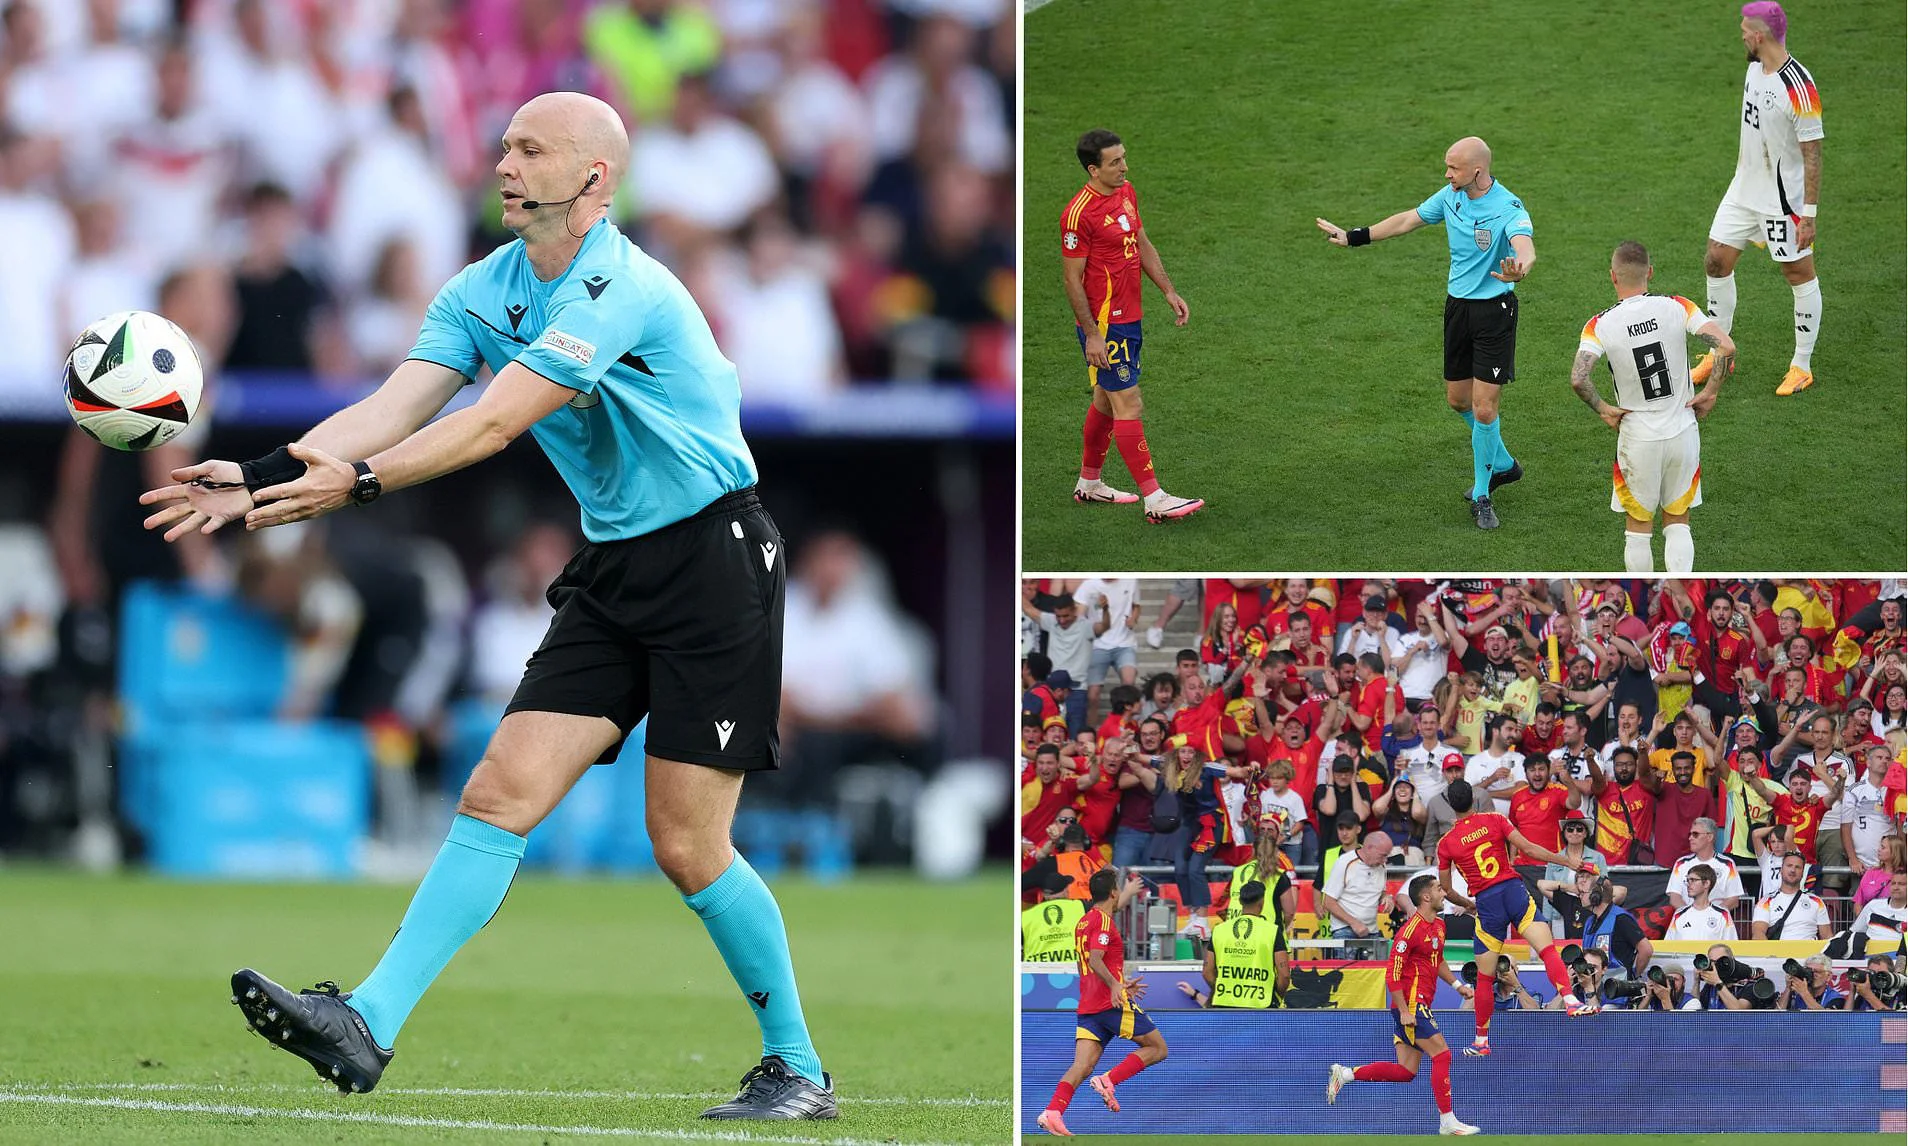 A kishte gabim teknik te Spanjë-Gjermani? UEFA shpjegon vendimin e diskutueshëm